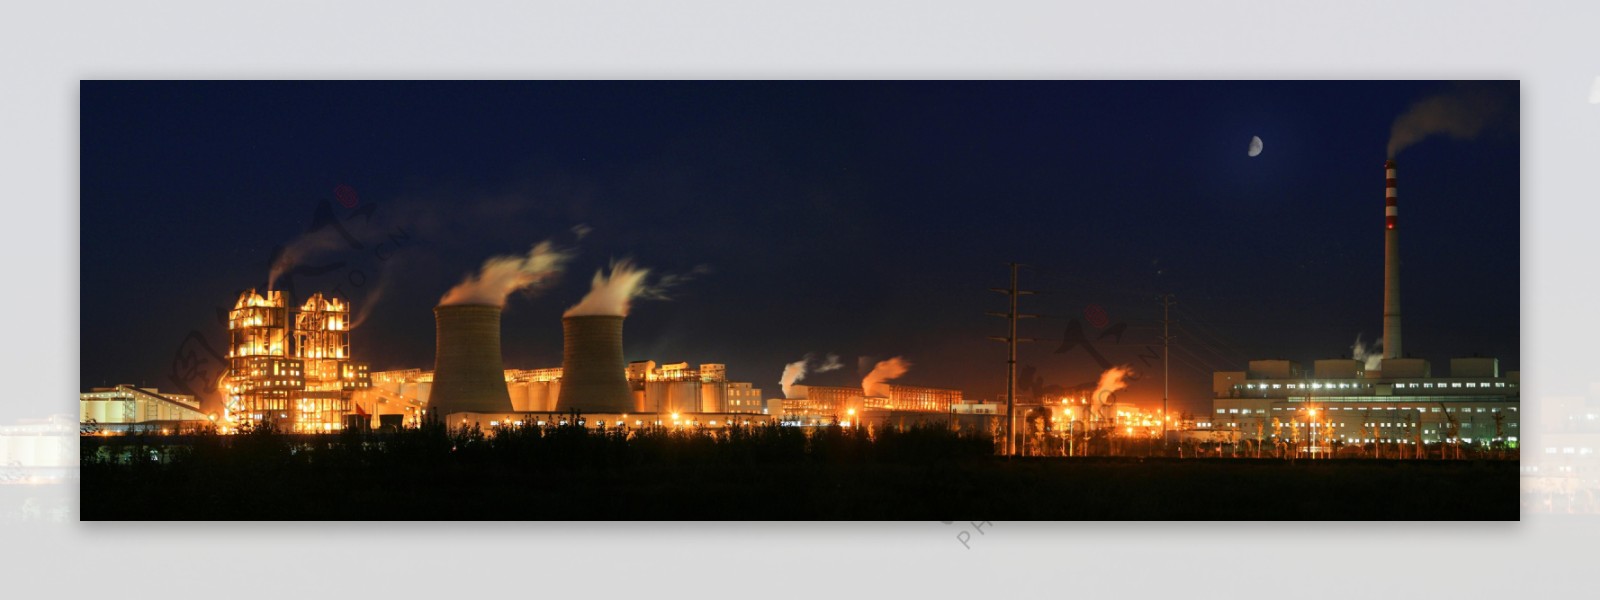 铝厂之夜图片